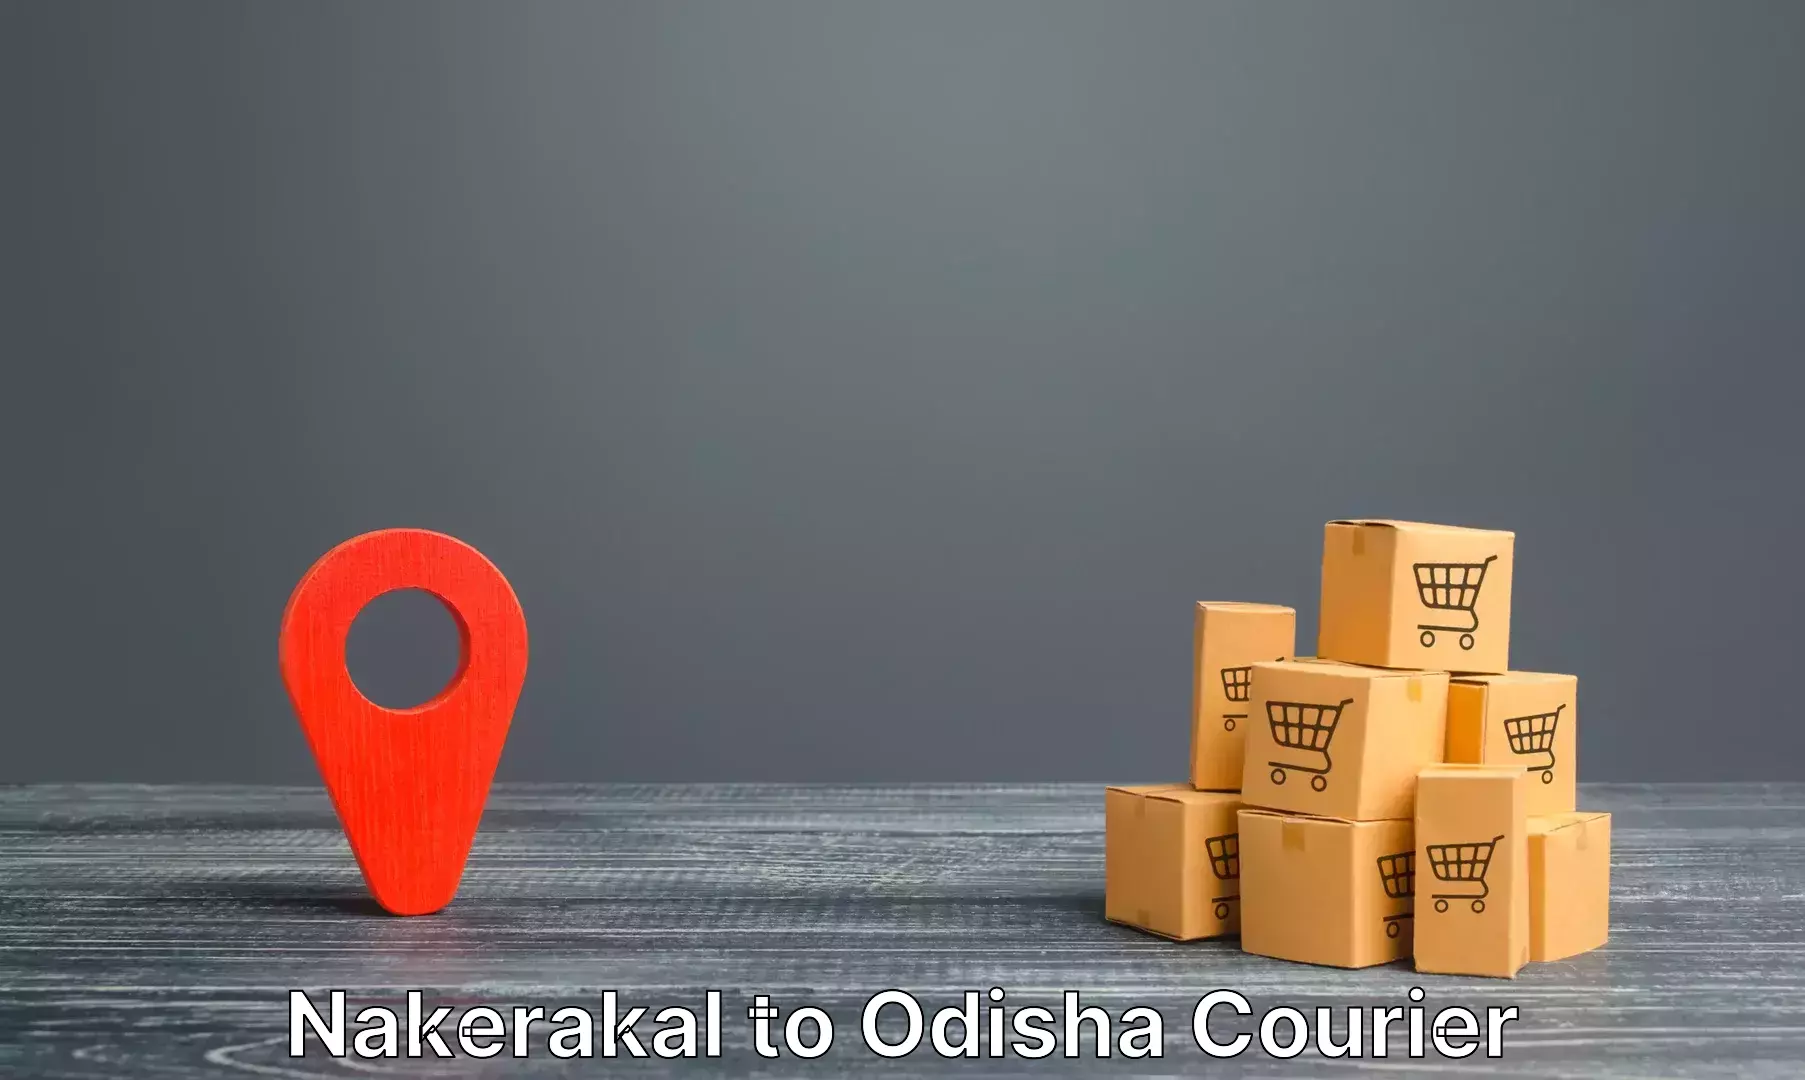 Baggage delivery management Nakerakal to Kosagumuda